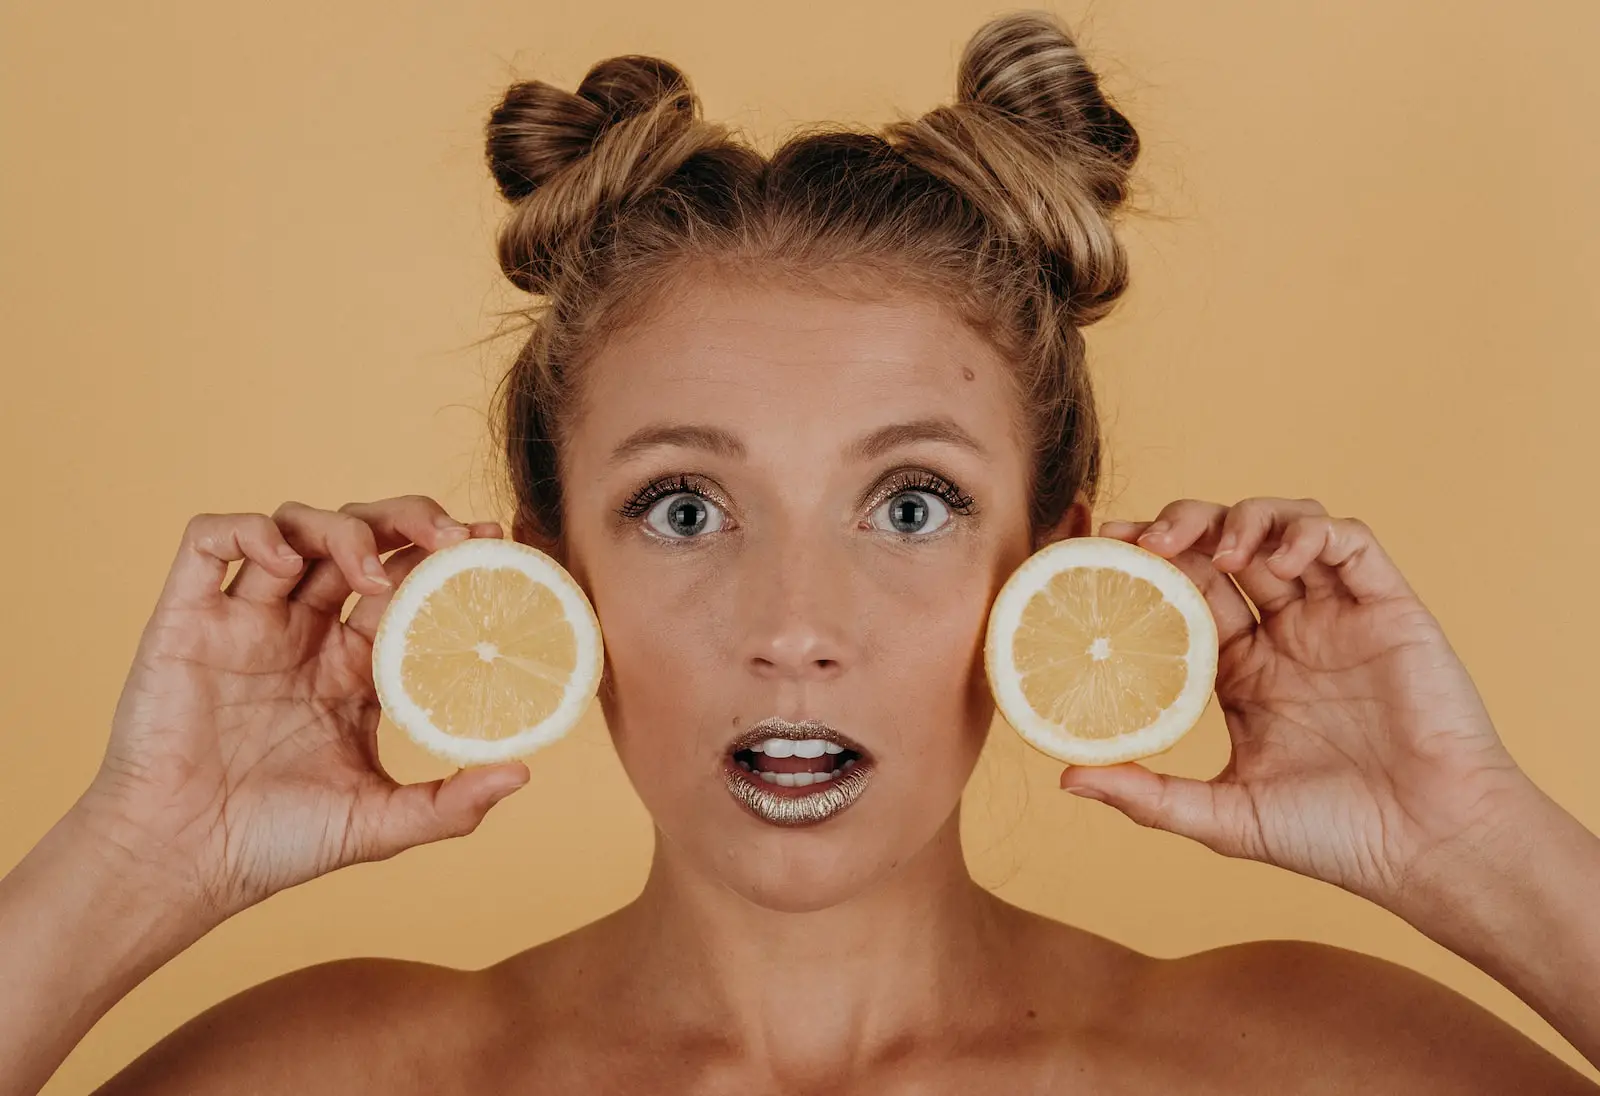 Notre avis sur l’utilisation du citron sur le visage !